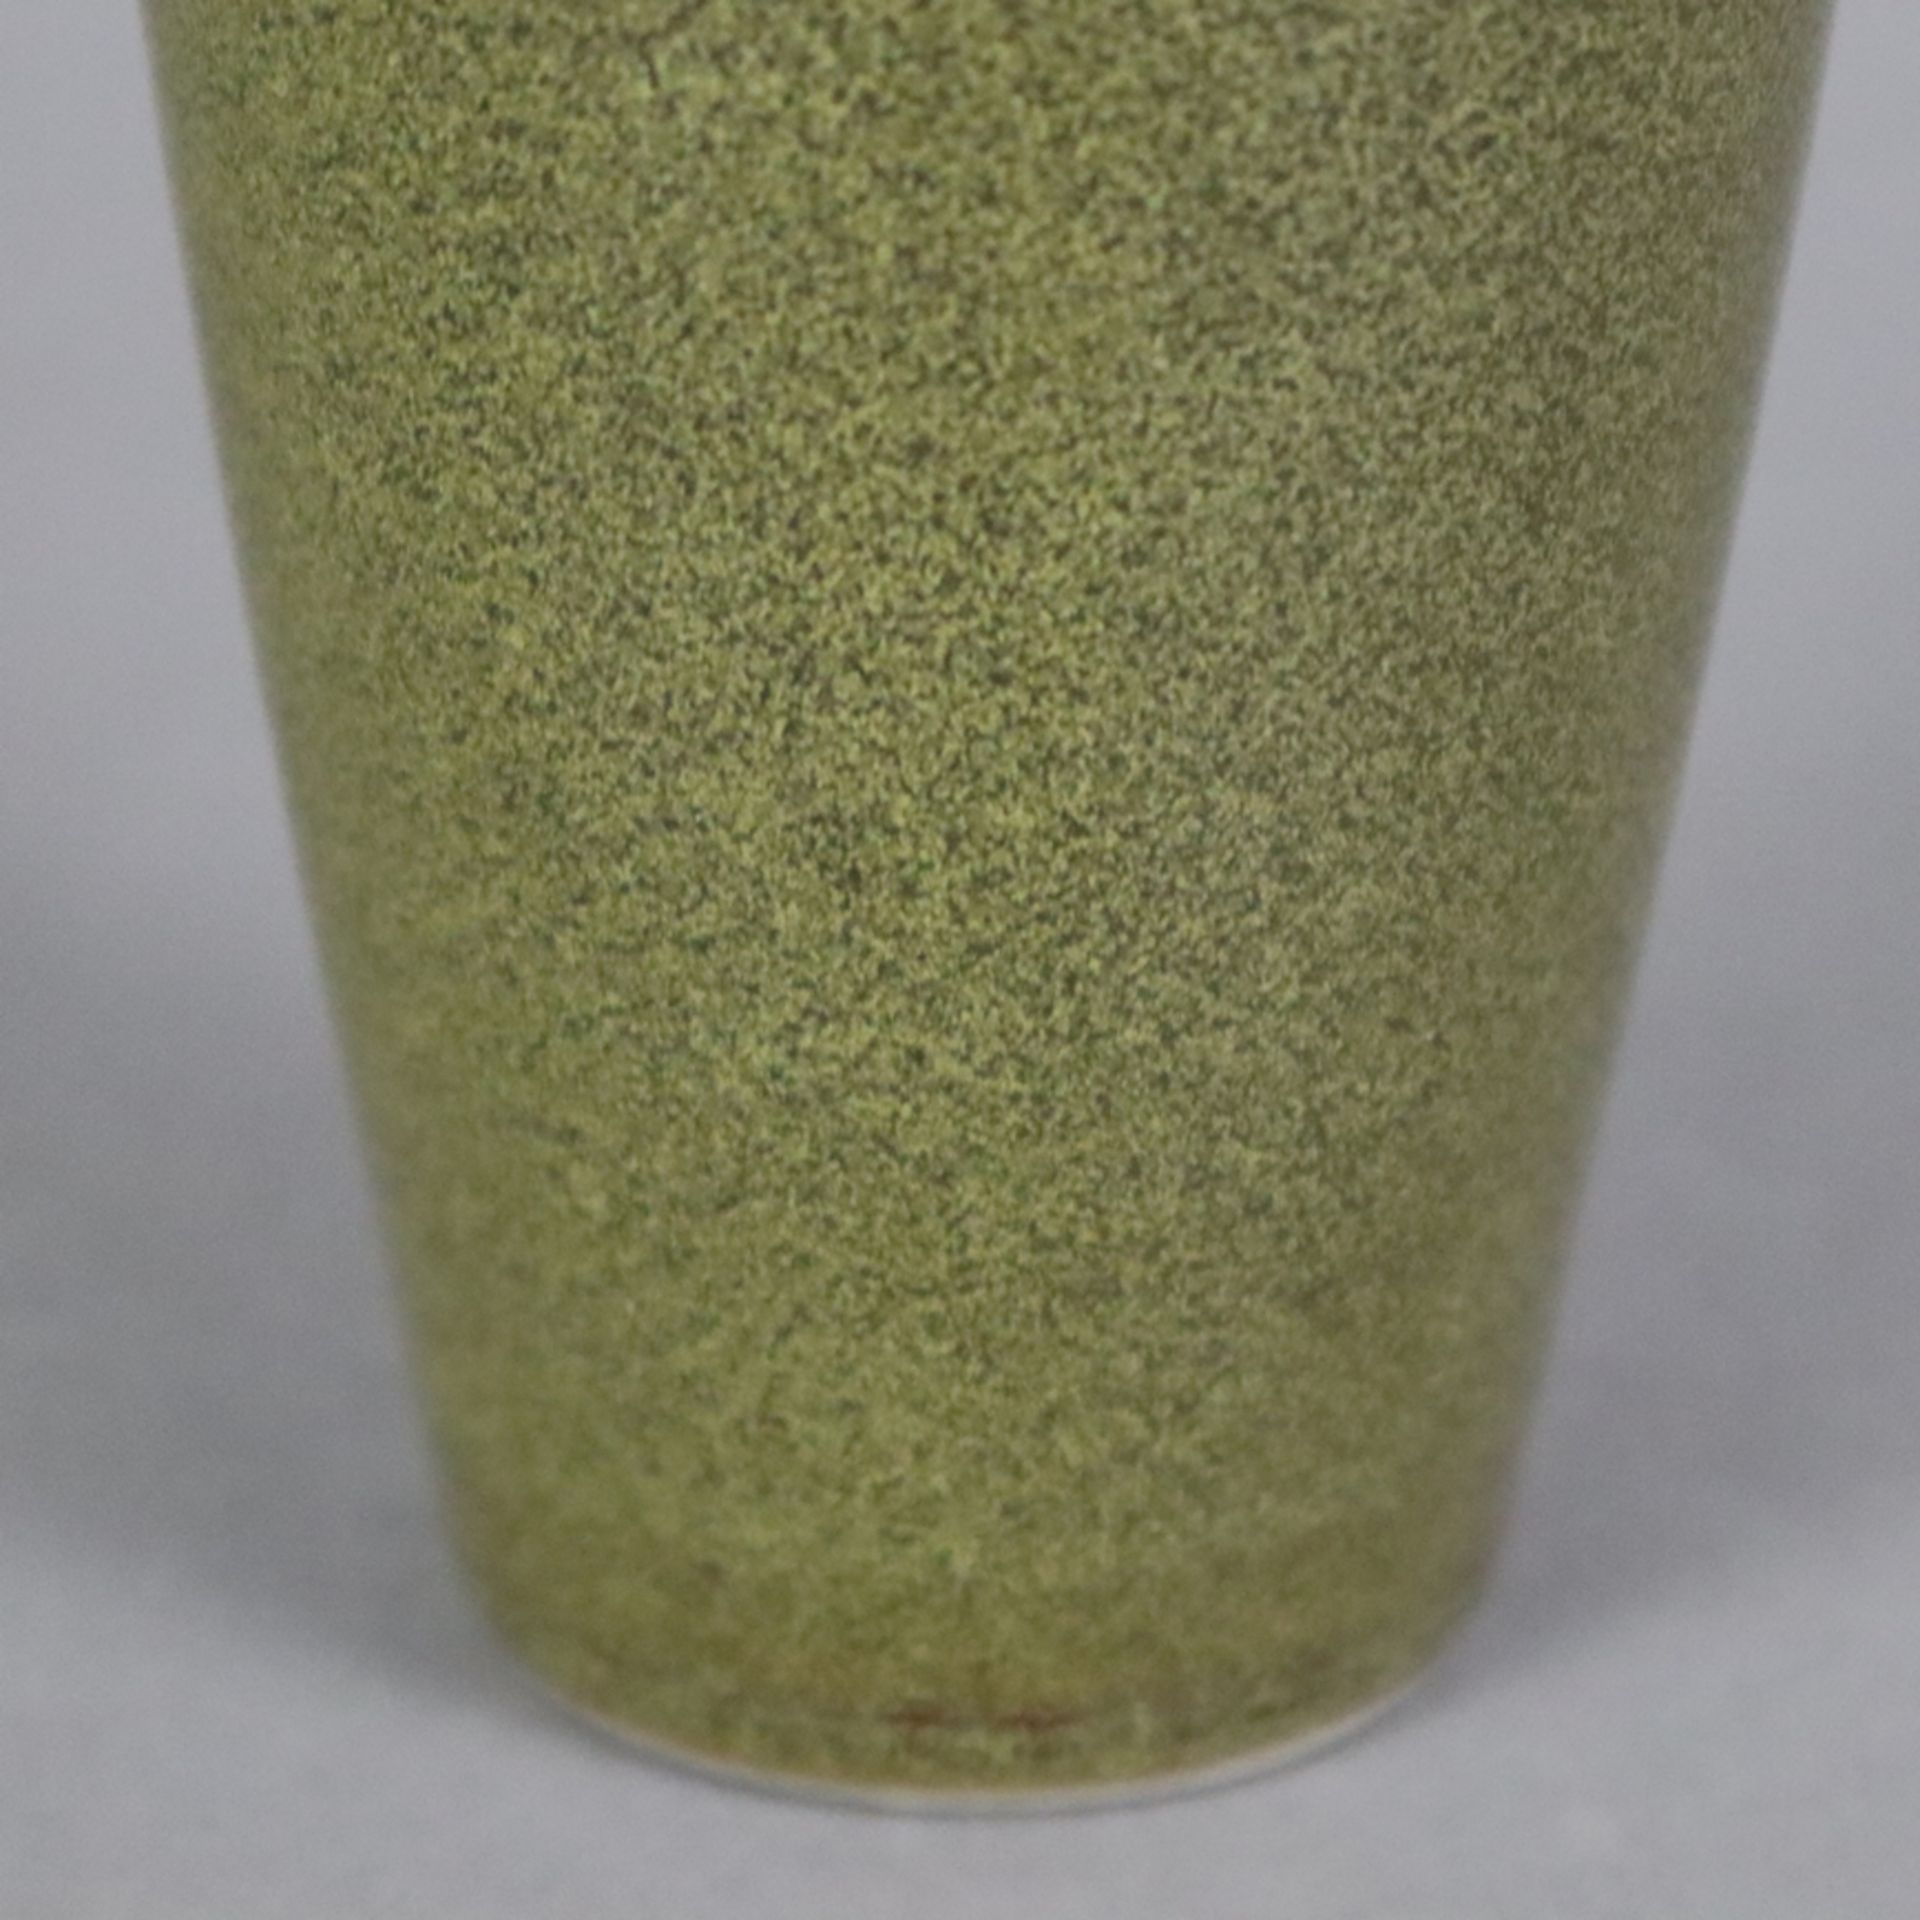 Kleine Flaschenvase - China 20.Jh., Porzellan mit "Teedust"-Glasur, innen und unterseitig transpare - Bild 5 aus 7